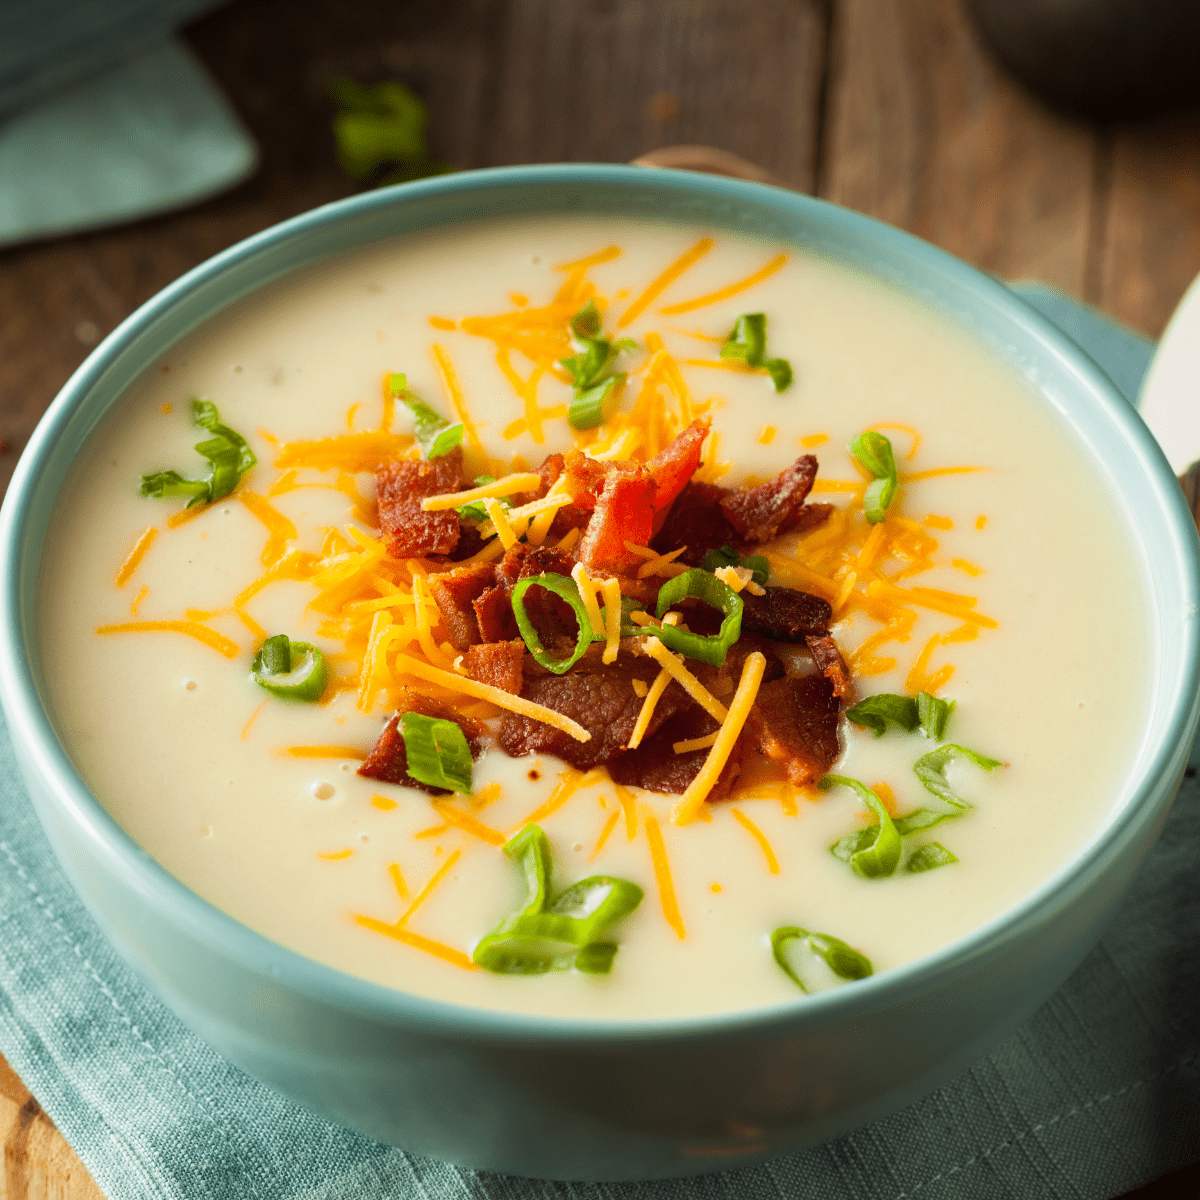 Best Instant Pot Potato Soup Recipe - How To Make Instant Pot